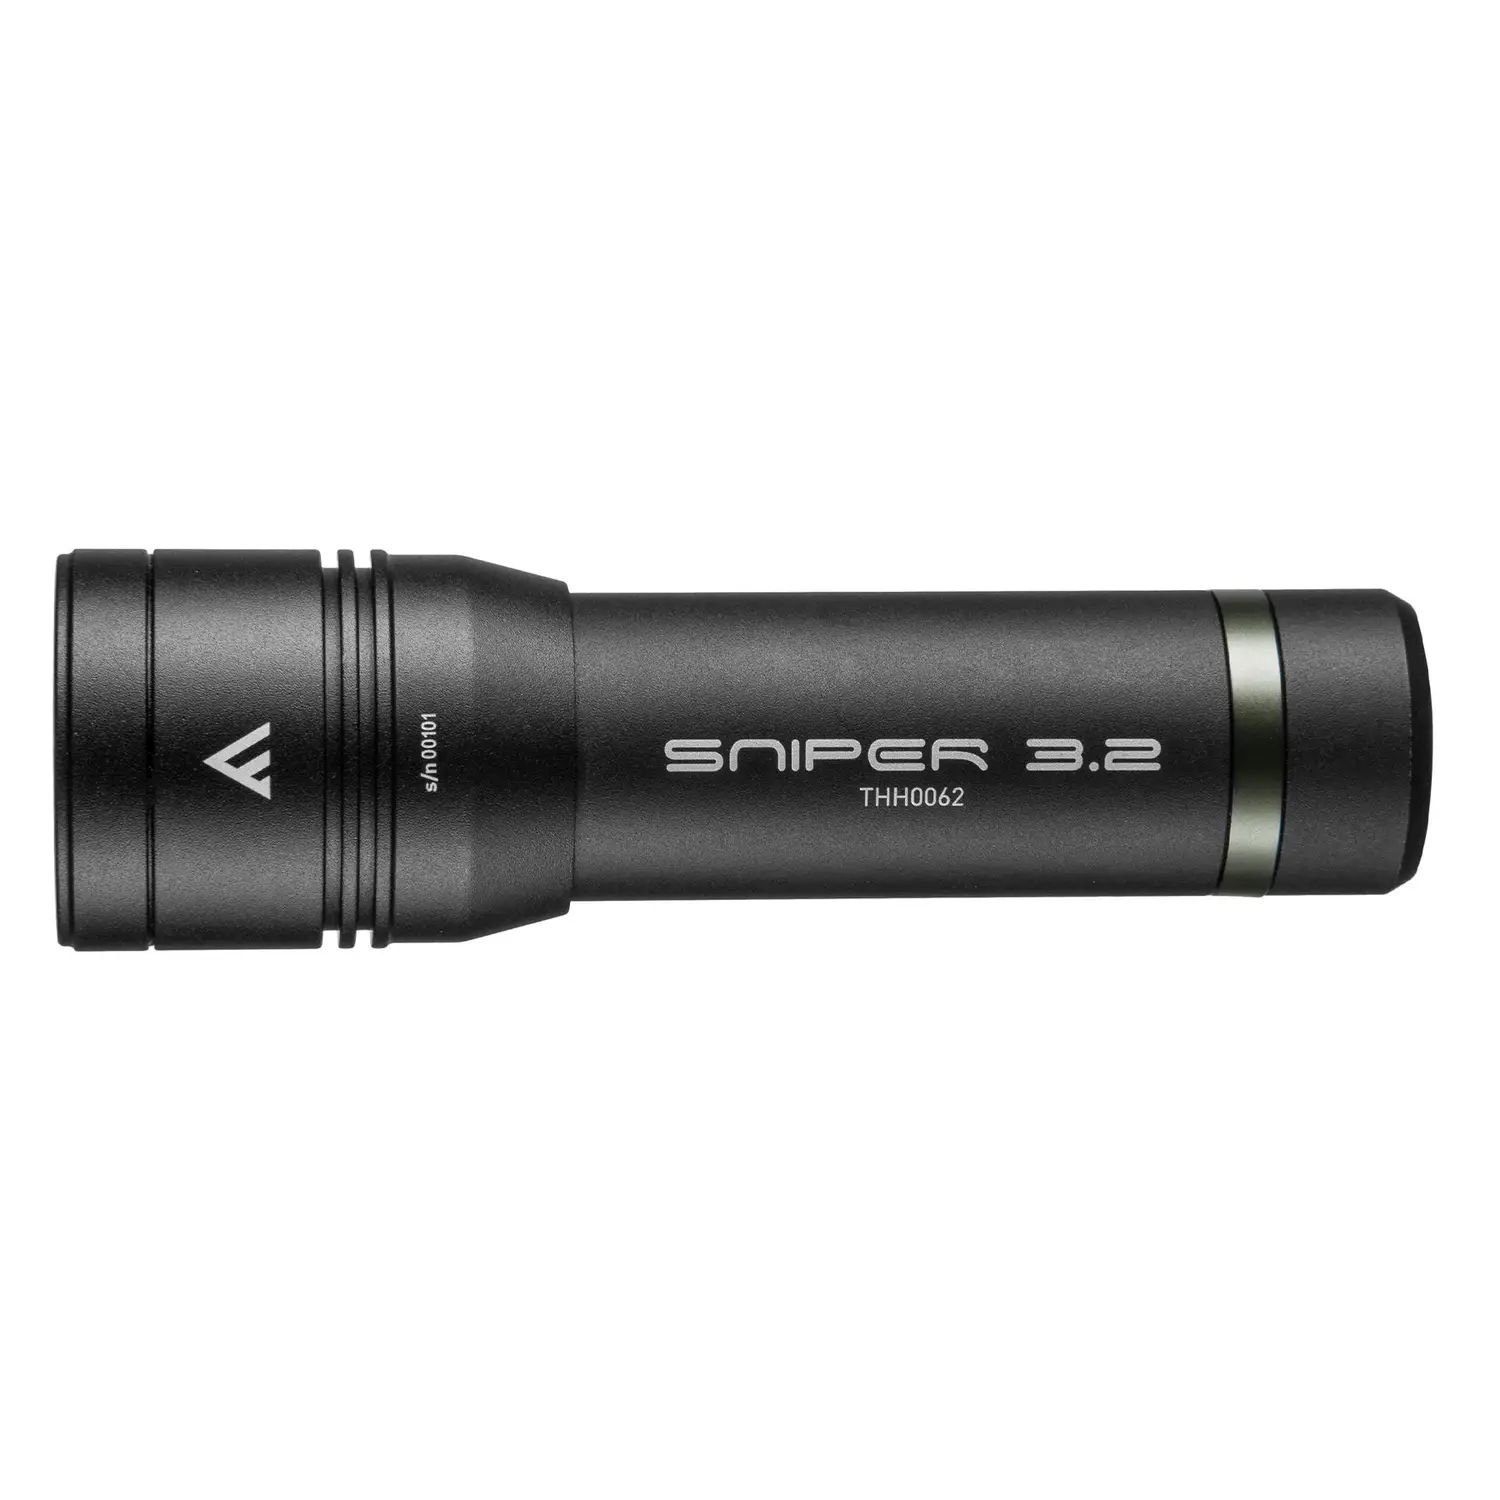 Фонарь тактический Mactronic Sniper 3.2, 420 Lm Silent Switch (THH0062) - фото 2